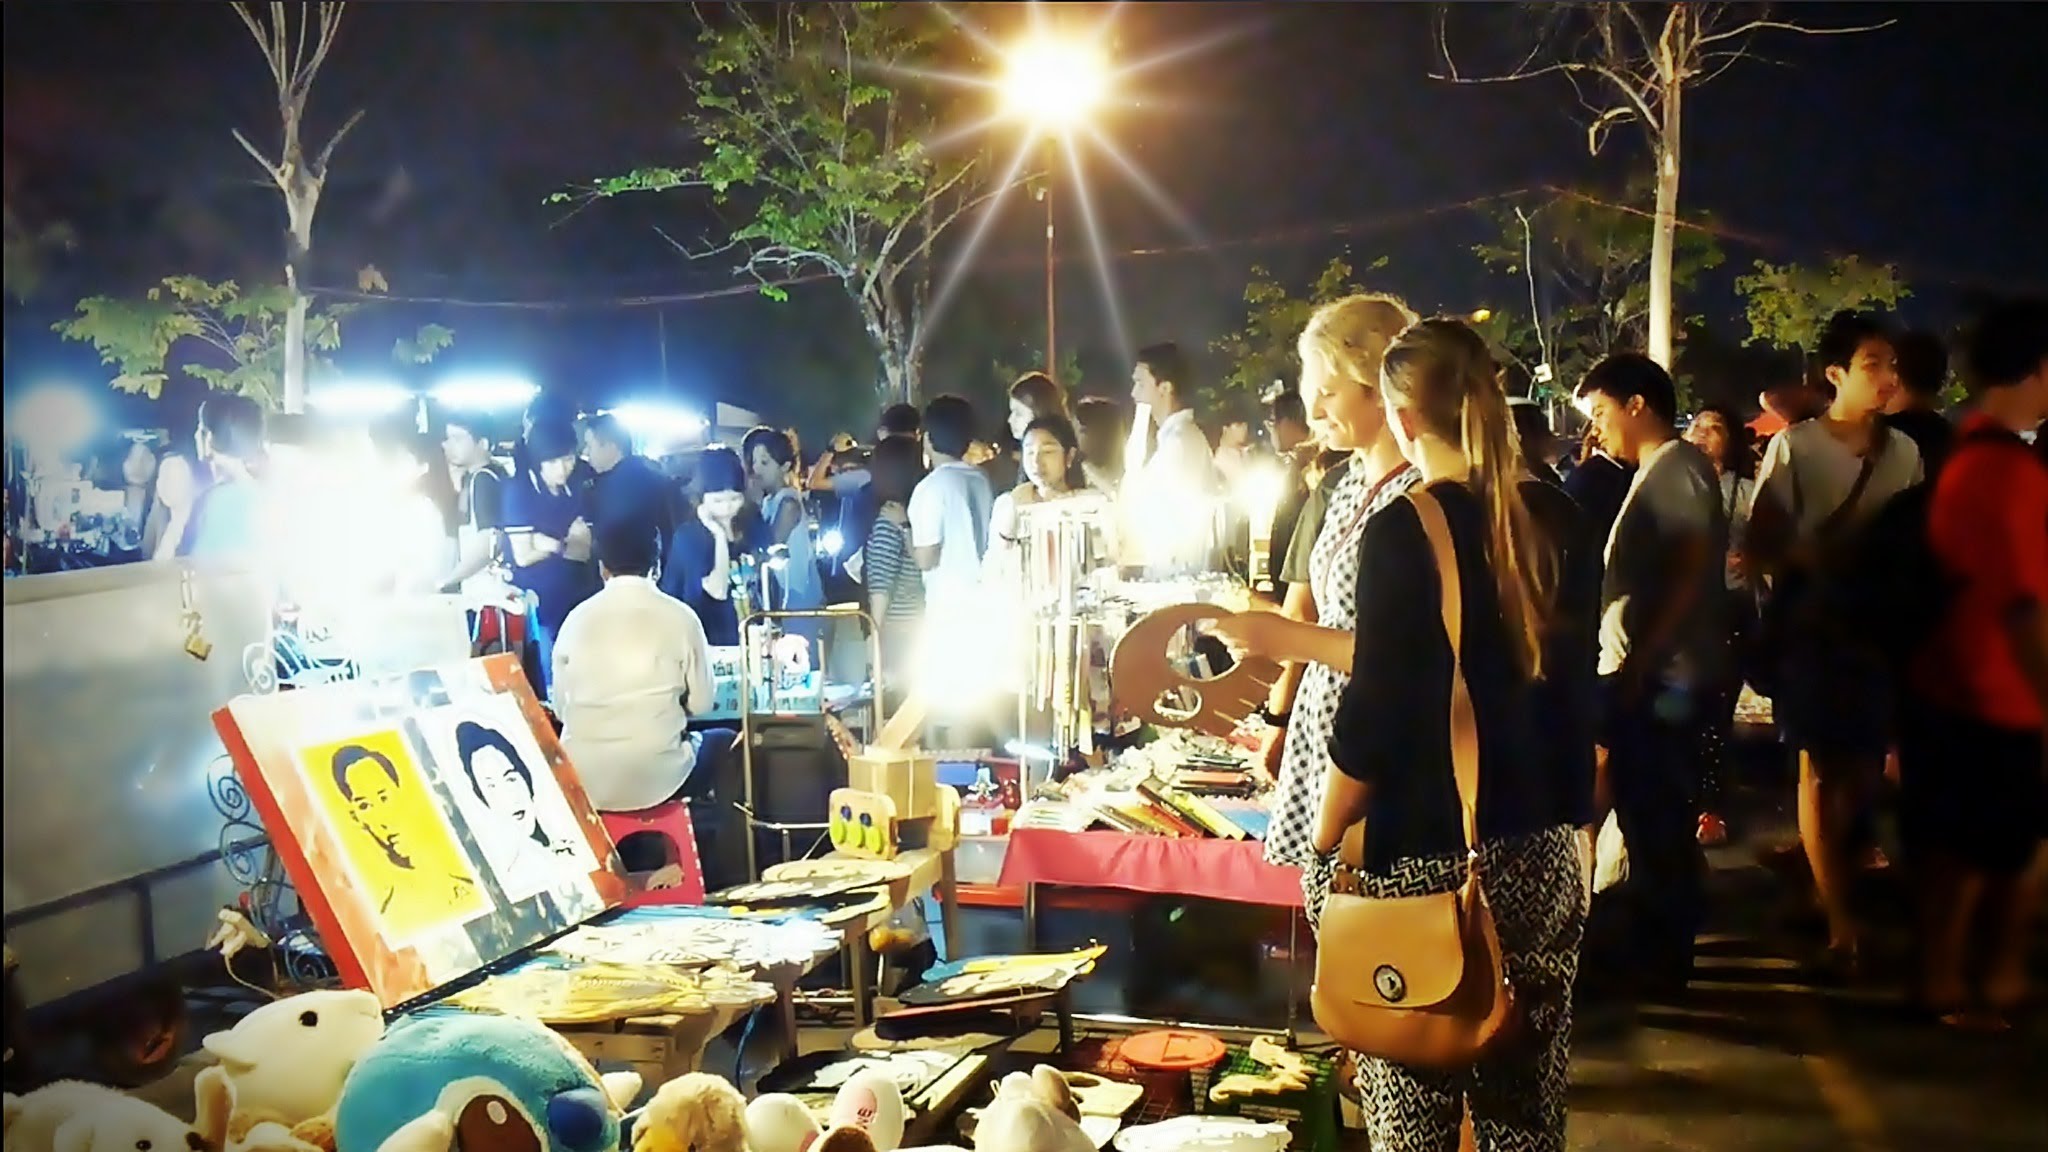 Chatuchak Night Market